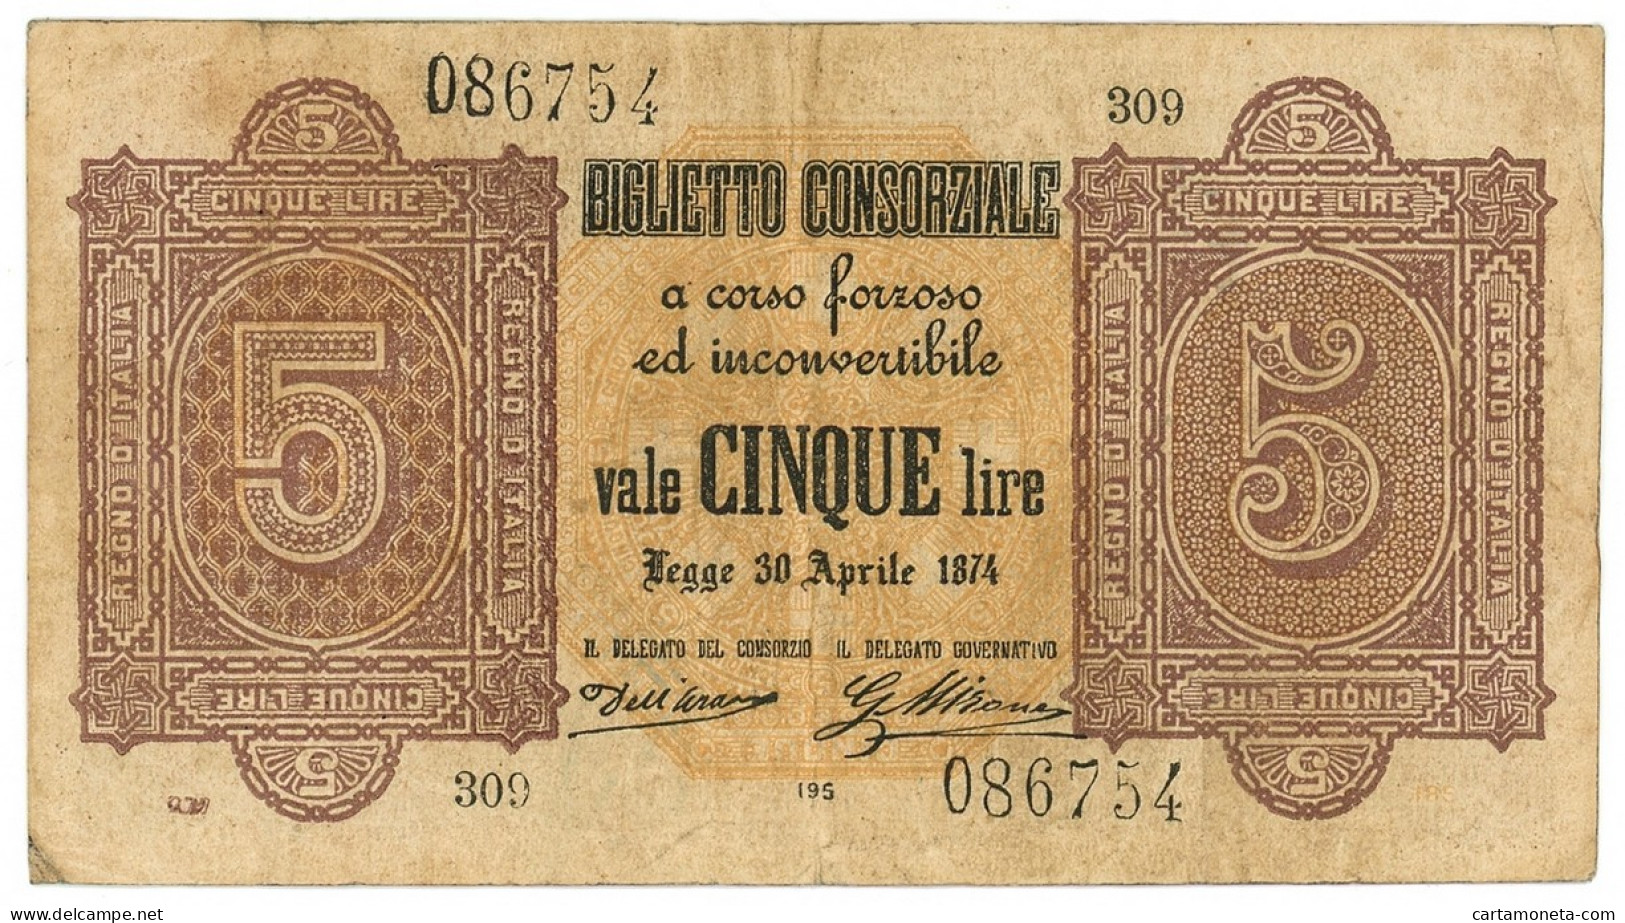 5 LIRE BIGLIETTO CONSORZIALE REGNO D'ITALIA 30/04/1874 BB/BB+ - Biglietto Consorziale